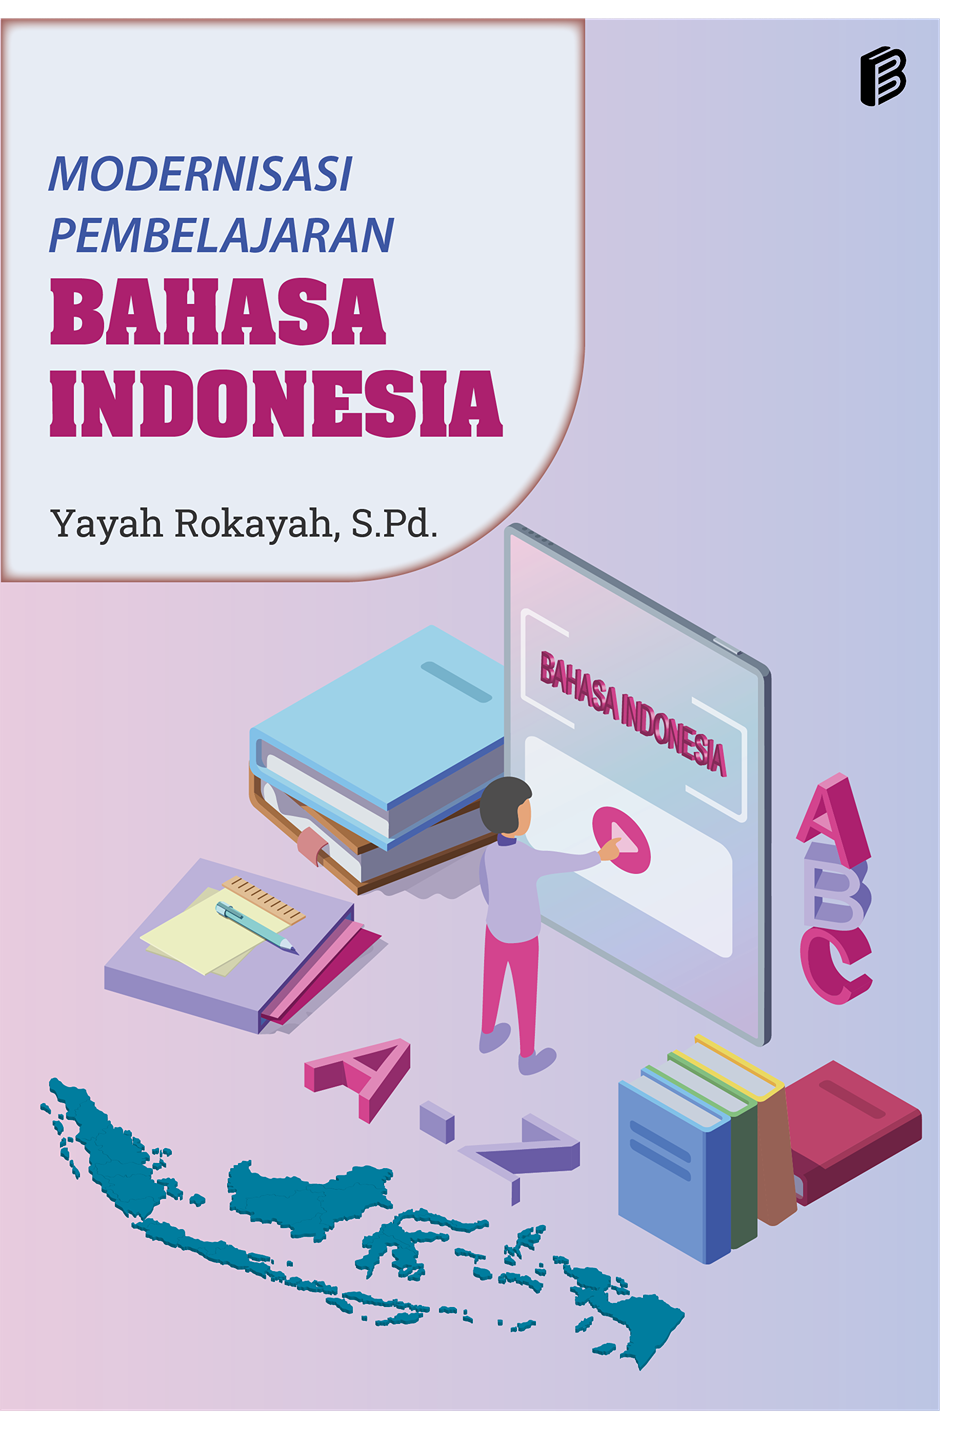 cover/(14-10-2022)modernisasi-pembelajaran-bahasa-indonesia.png